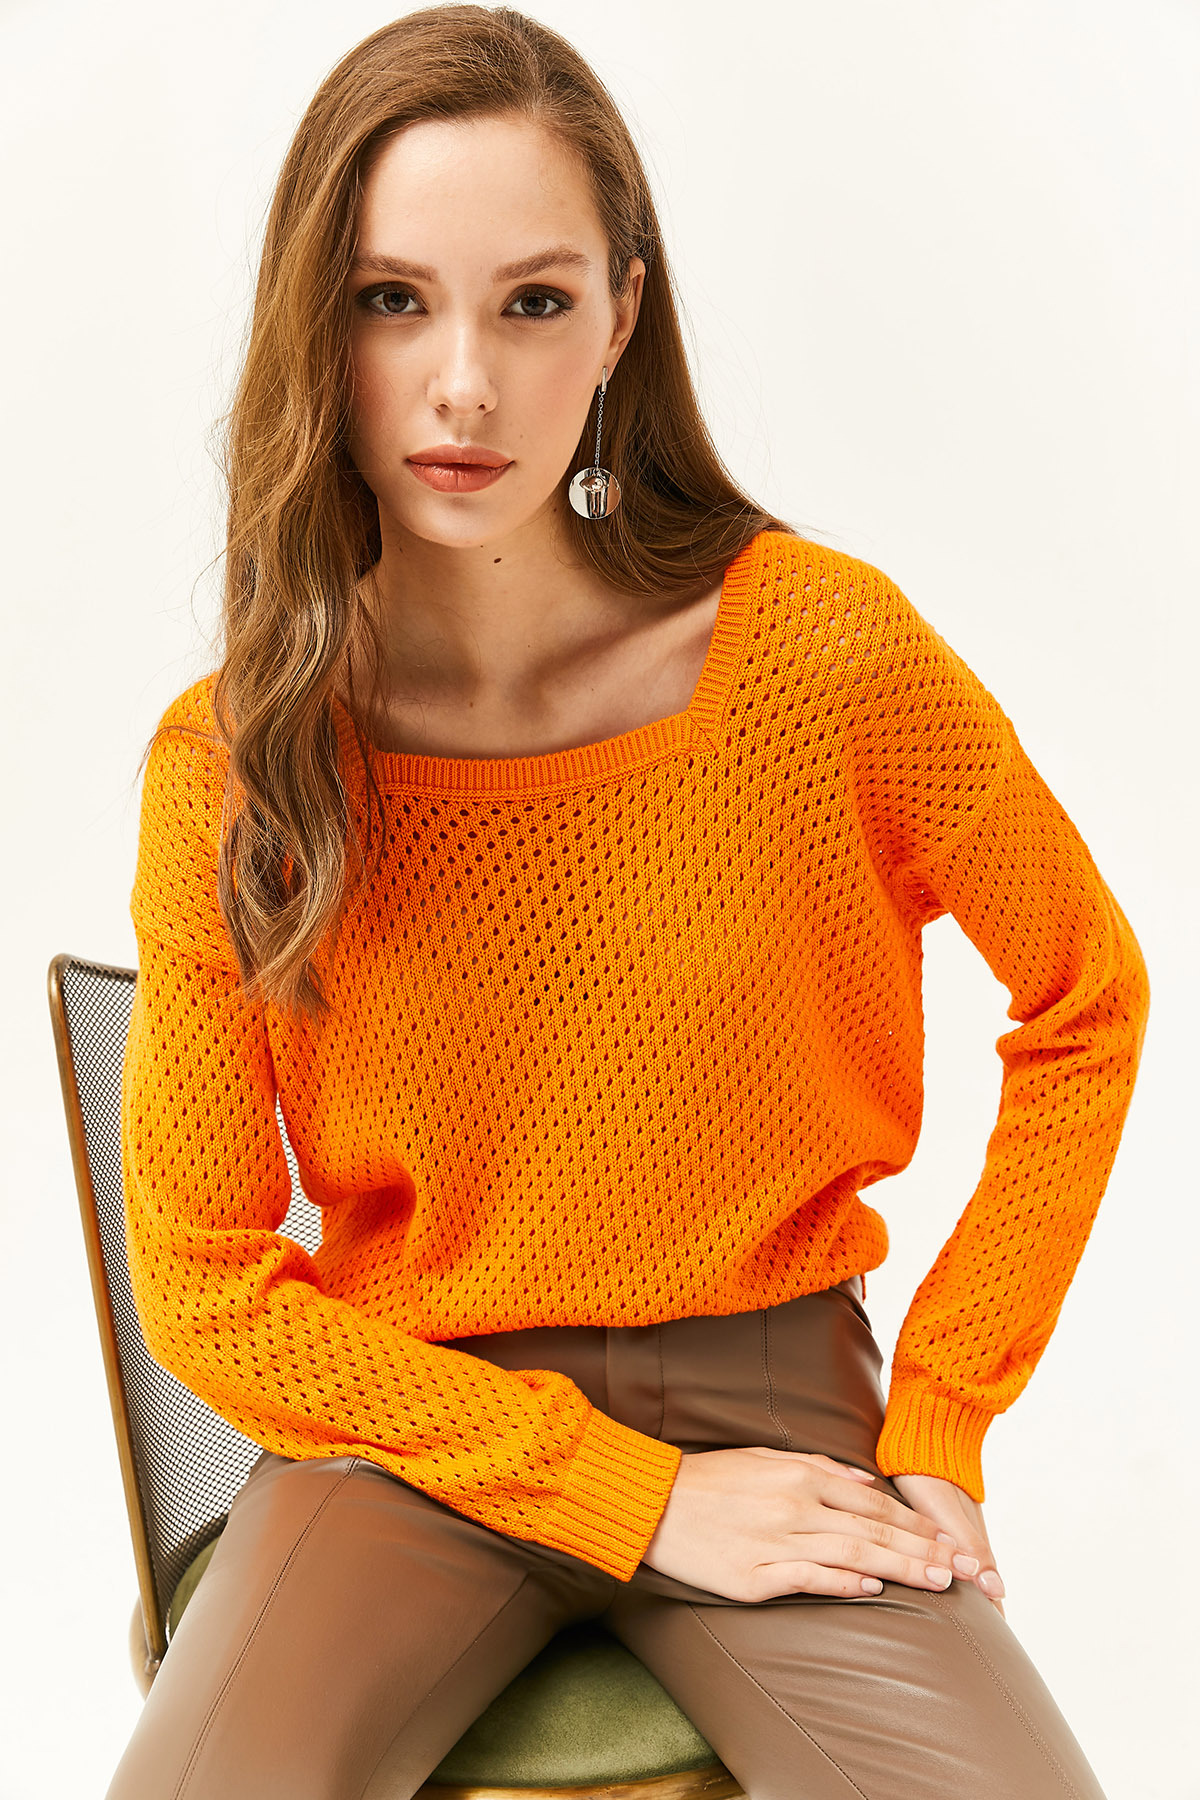 Olalook Women's Orange Square Neck Openwork Knitwear Sweater